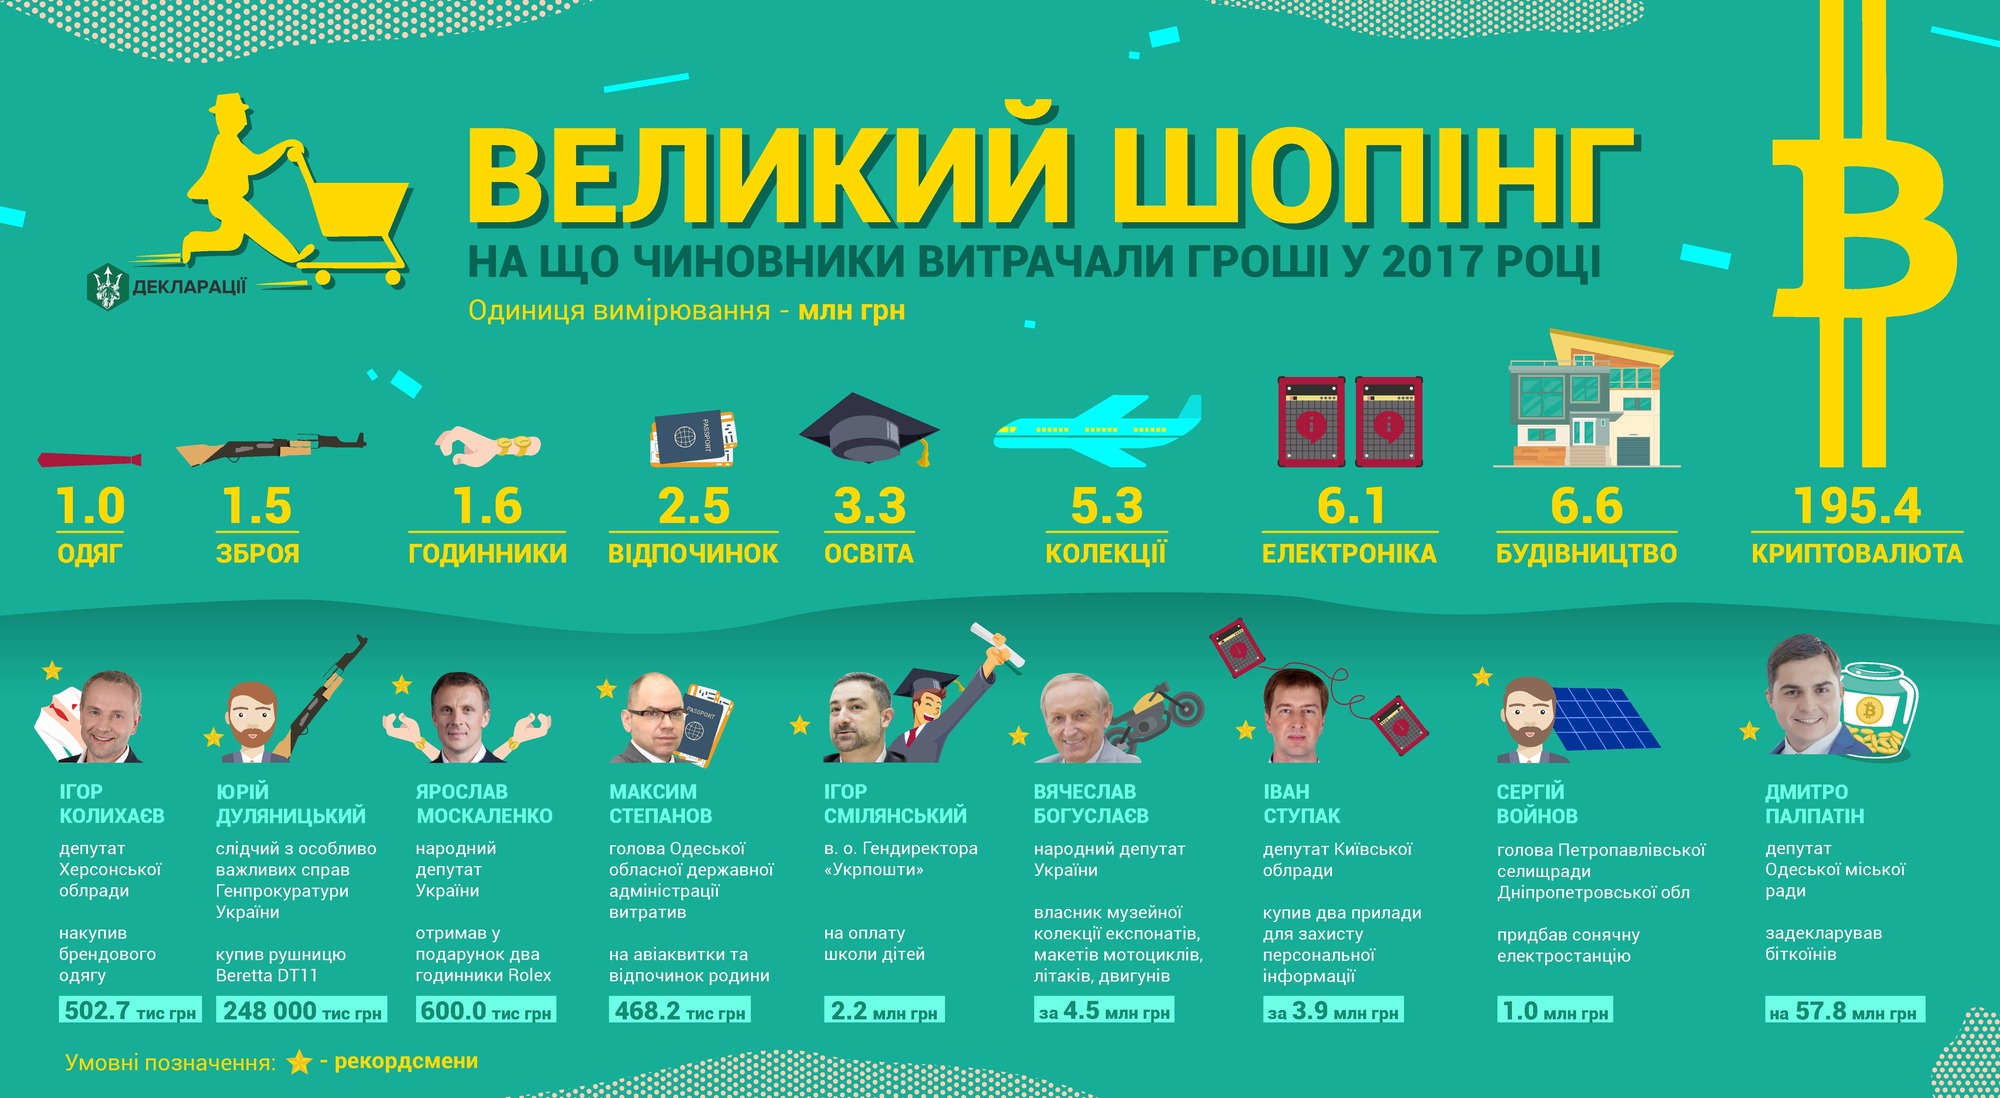 Українські чиновники витратили на біткоіни сотні мільйонів